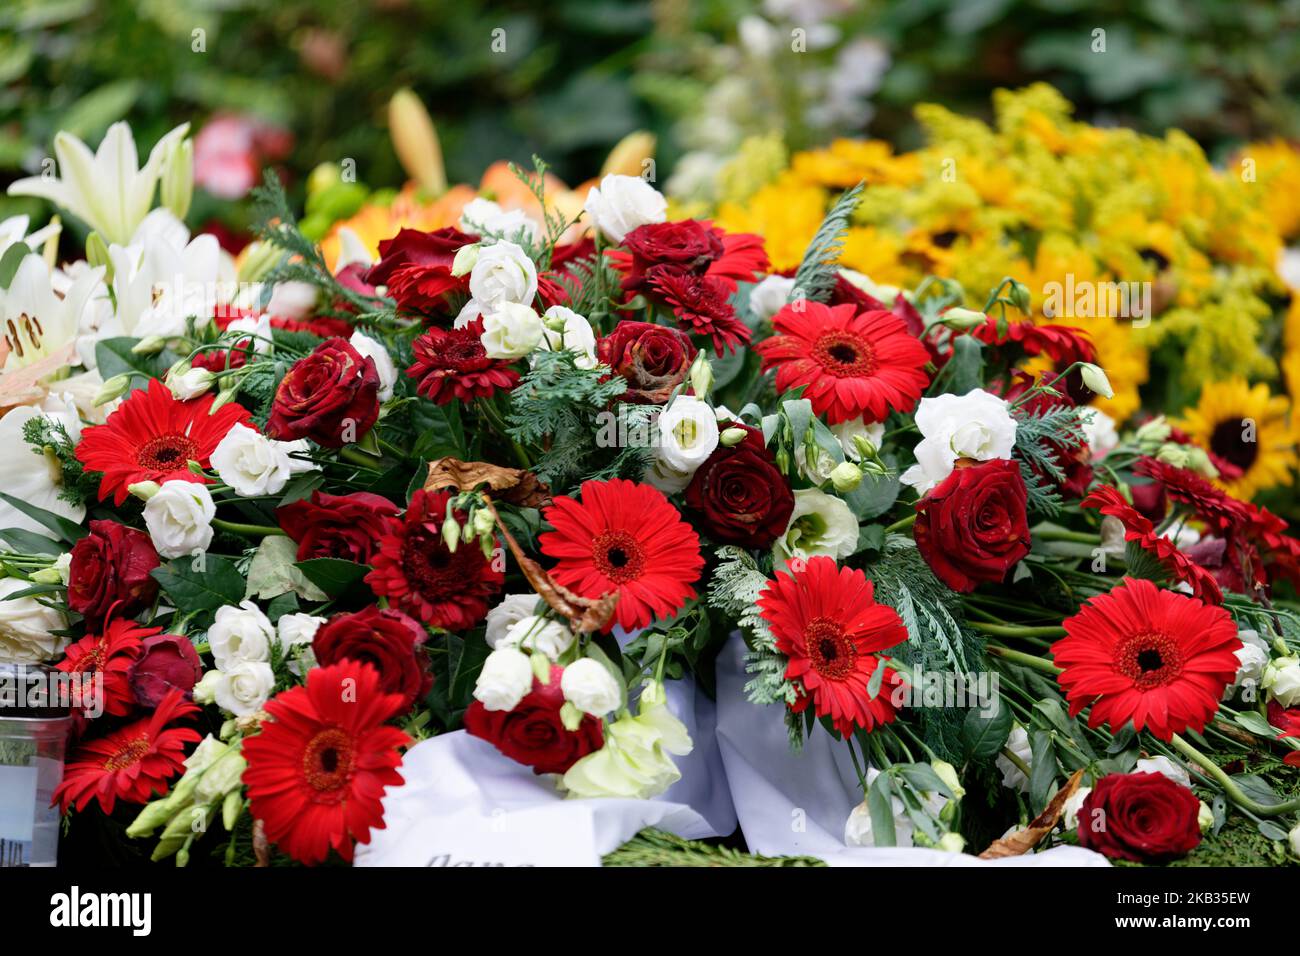 rosen, Gerbera, Lilien und Sonnenblumen auf einem Grab nach einer Beerdigung Stockfoto